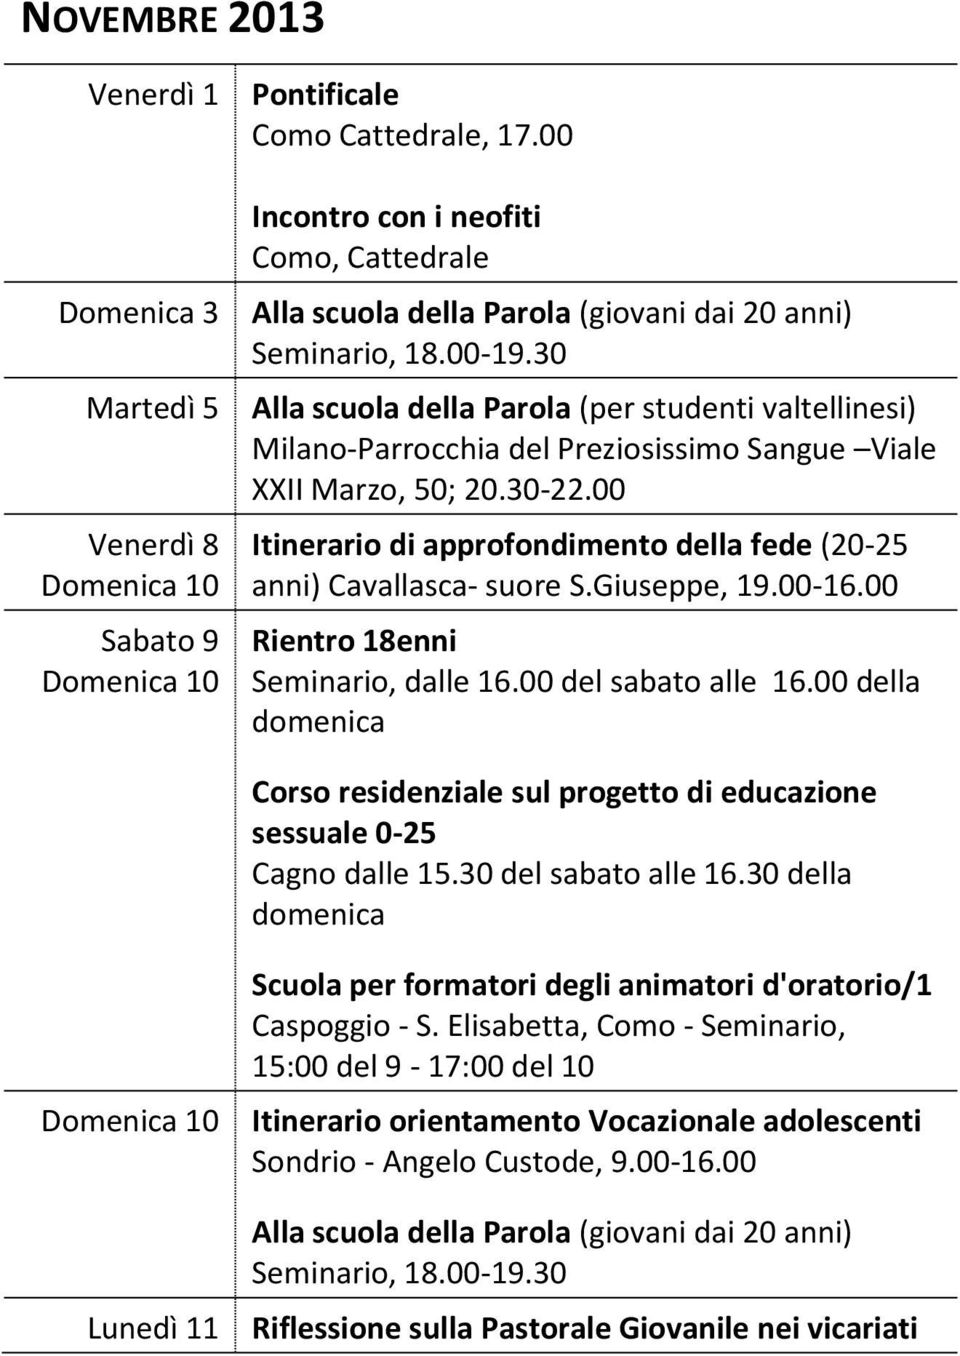 30 Alla scuola della Parola (per studenti valtellinesi) Milano-Parrocchia del Preziosissimo Sangue Viale XXII Marzo, 50; 20.30-22.